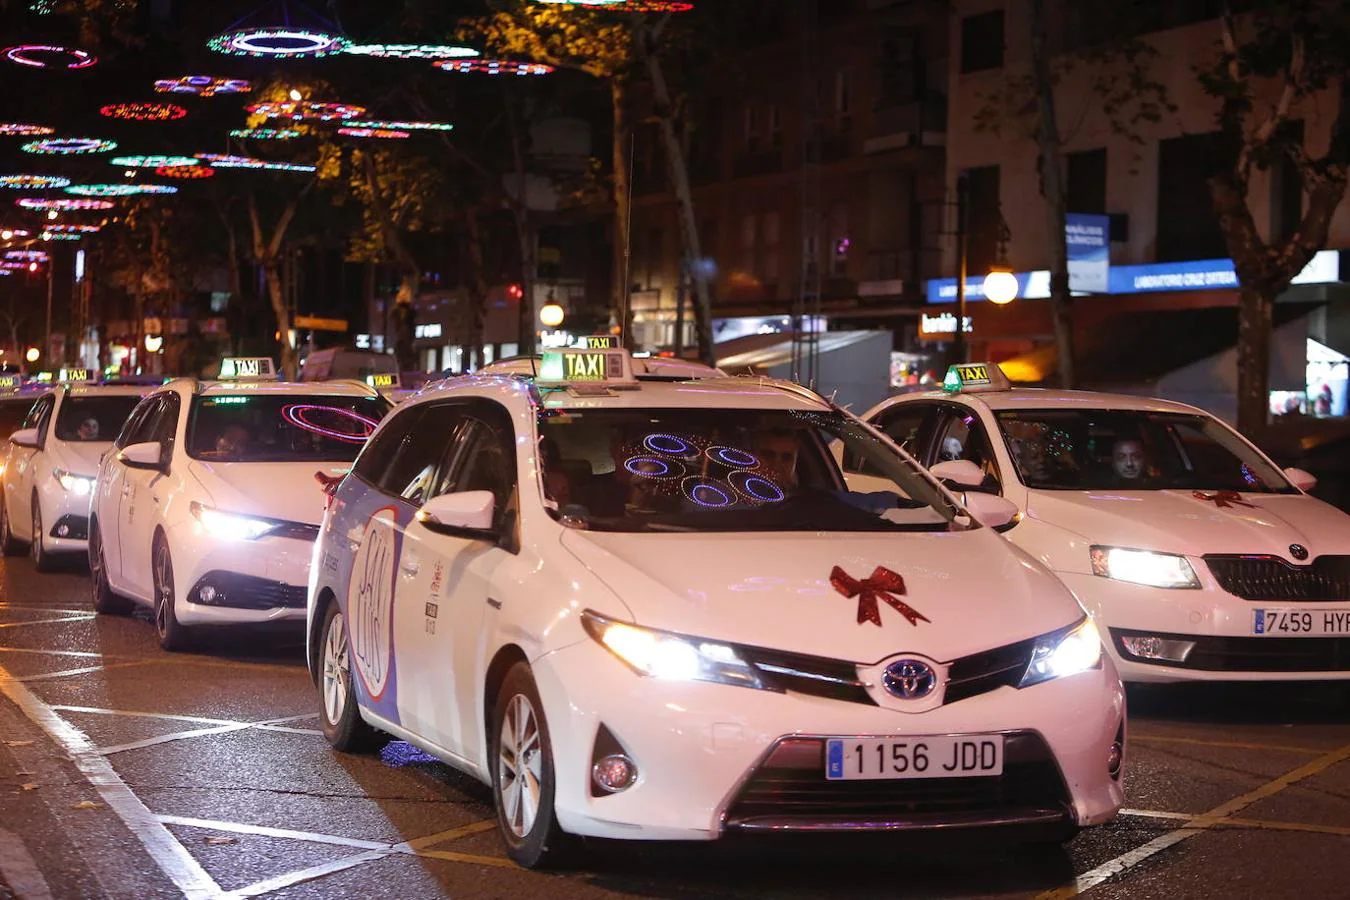 El paseo de la ilusión del taxi en Córdoba, en imágenes